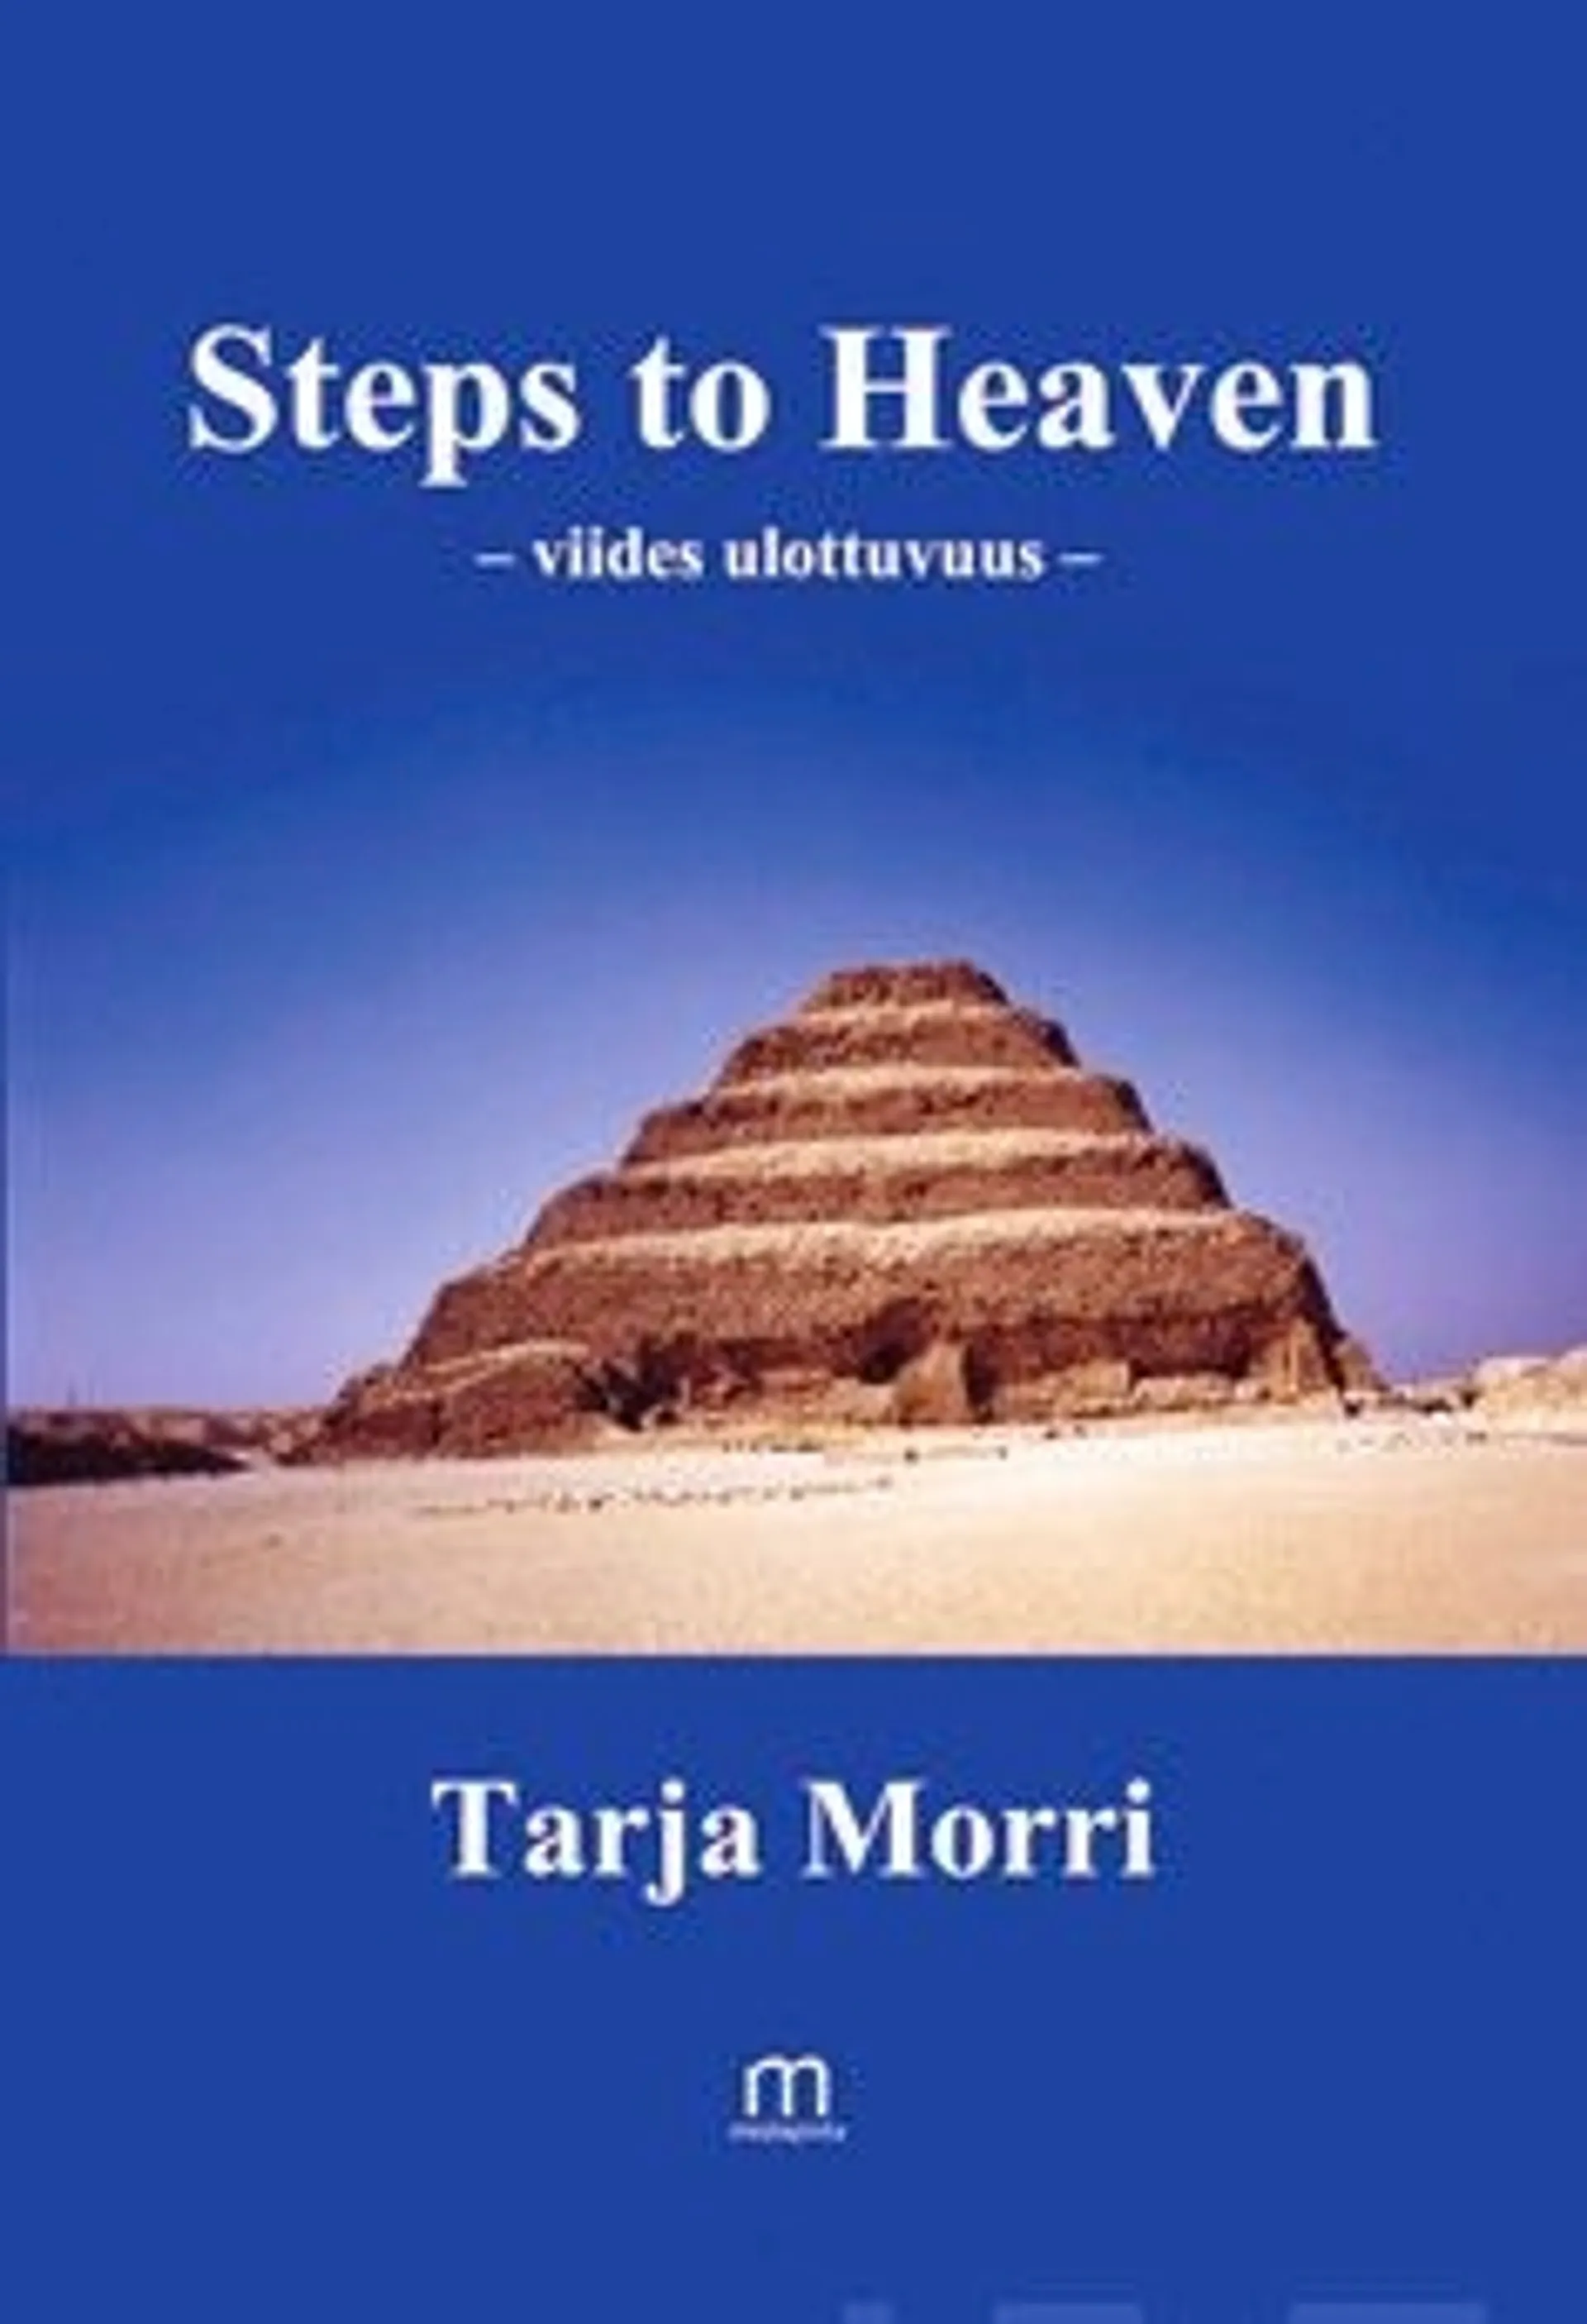 Morri, Steps to Heaven - viides ulottovuus